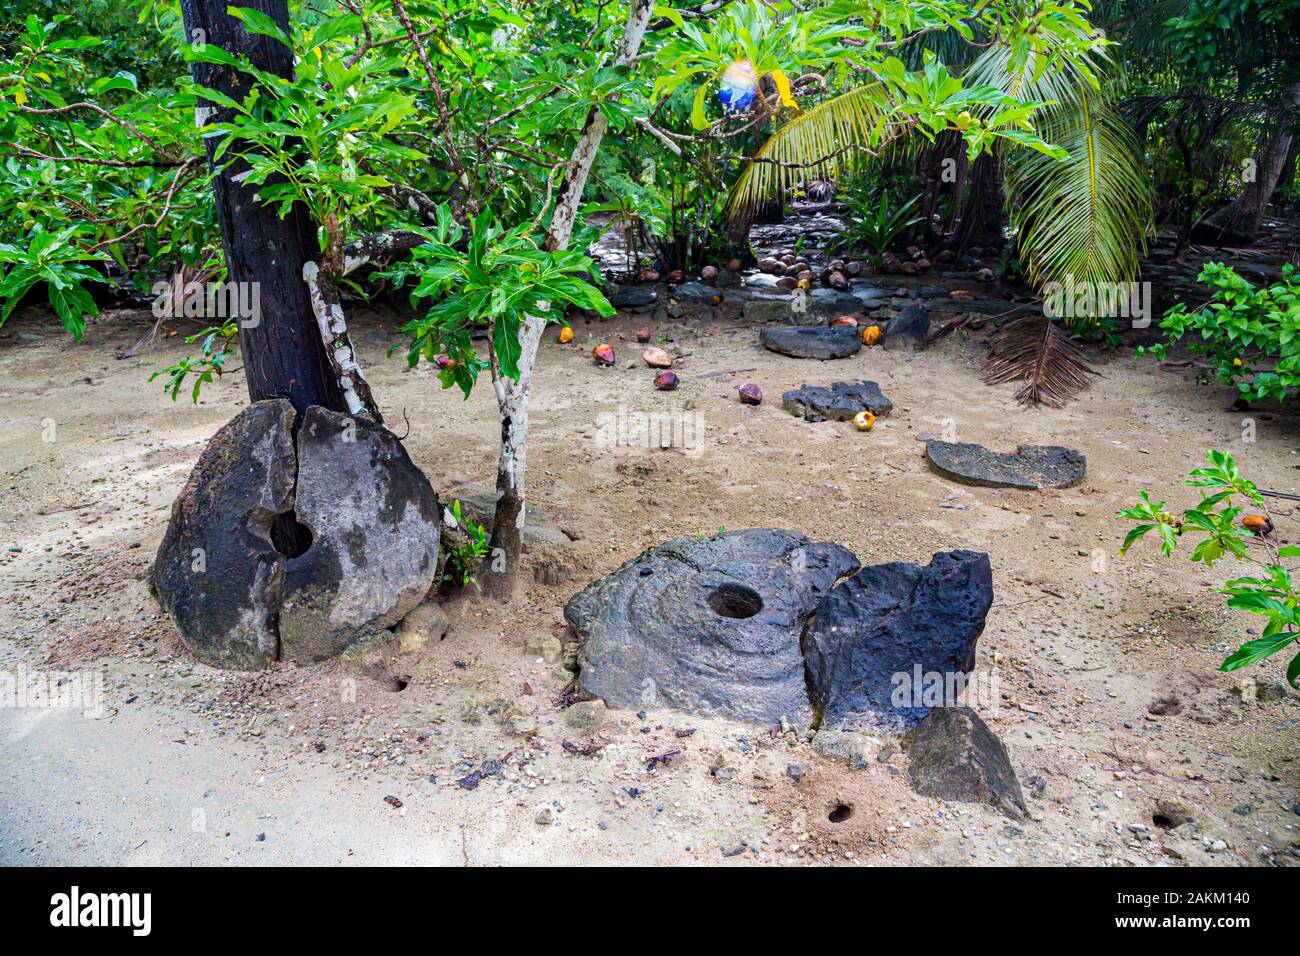 Dos gigantes de piedra megalítico prehistórico rotos, monedas o dinero rai, tumbado en la arena ocultos bajo los árboles de la selva. La Isla Yap, Estados Federados de MICR Foto de stock